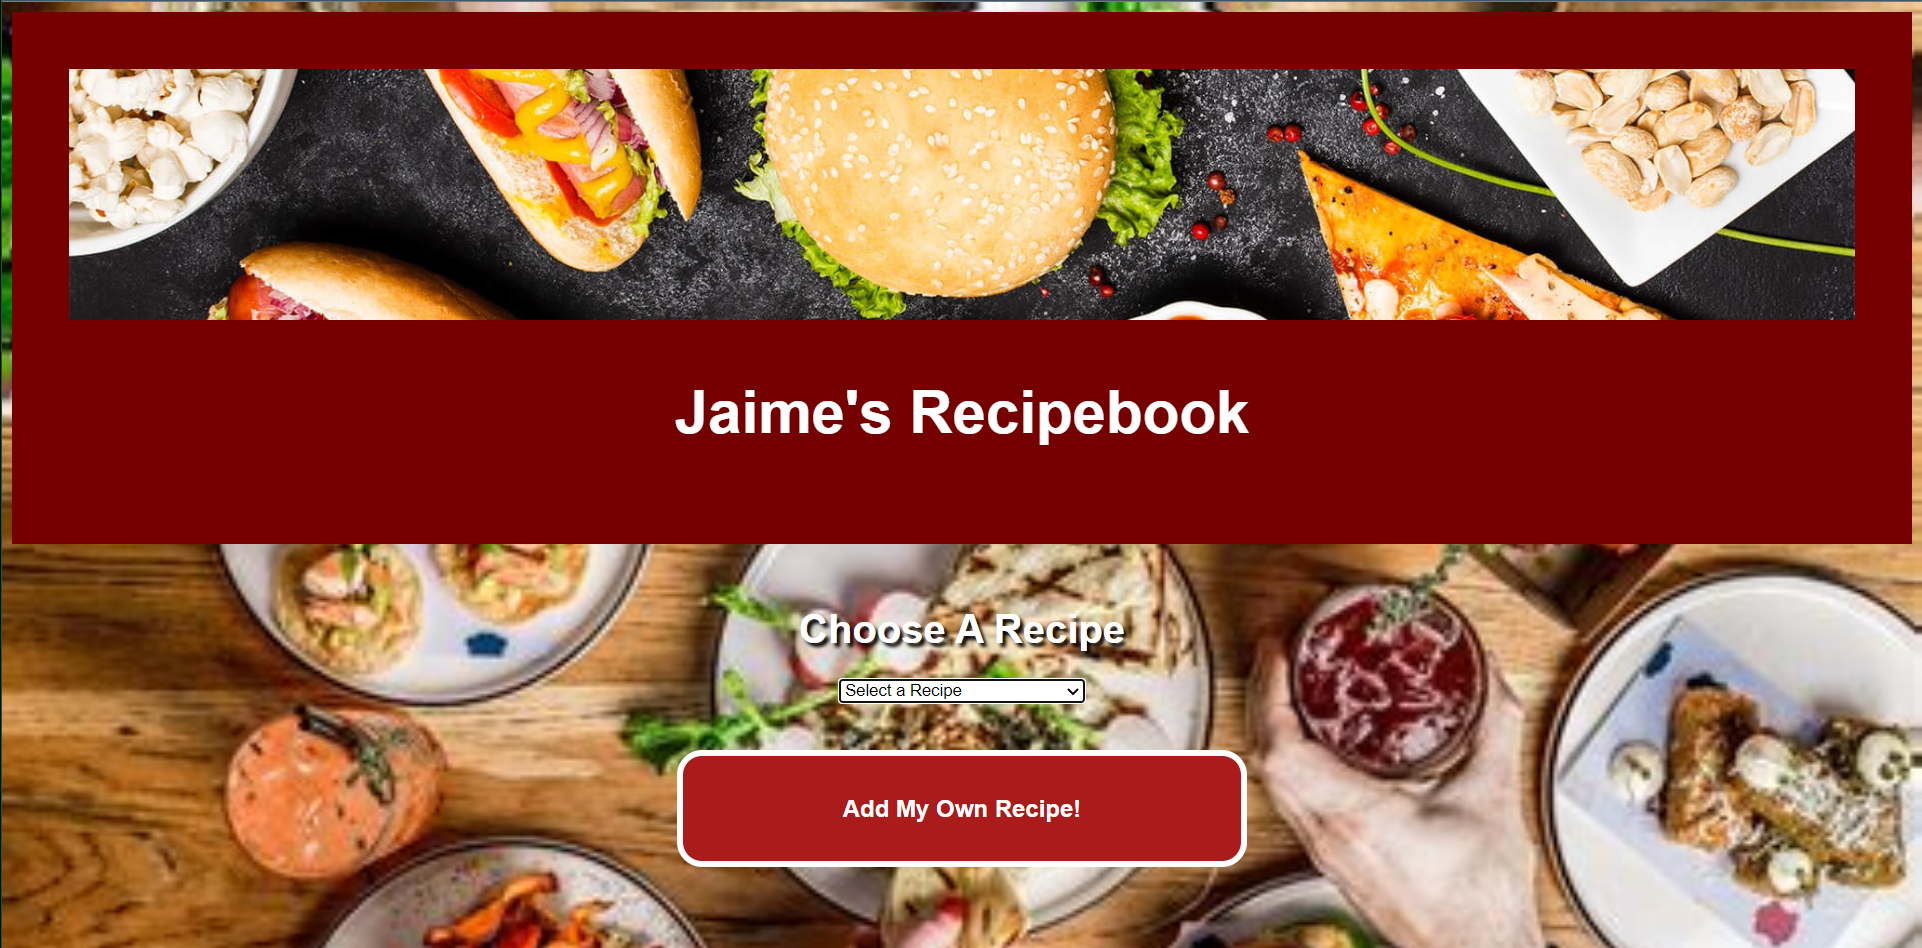 Jaime's Recipebook